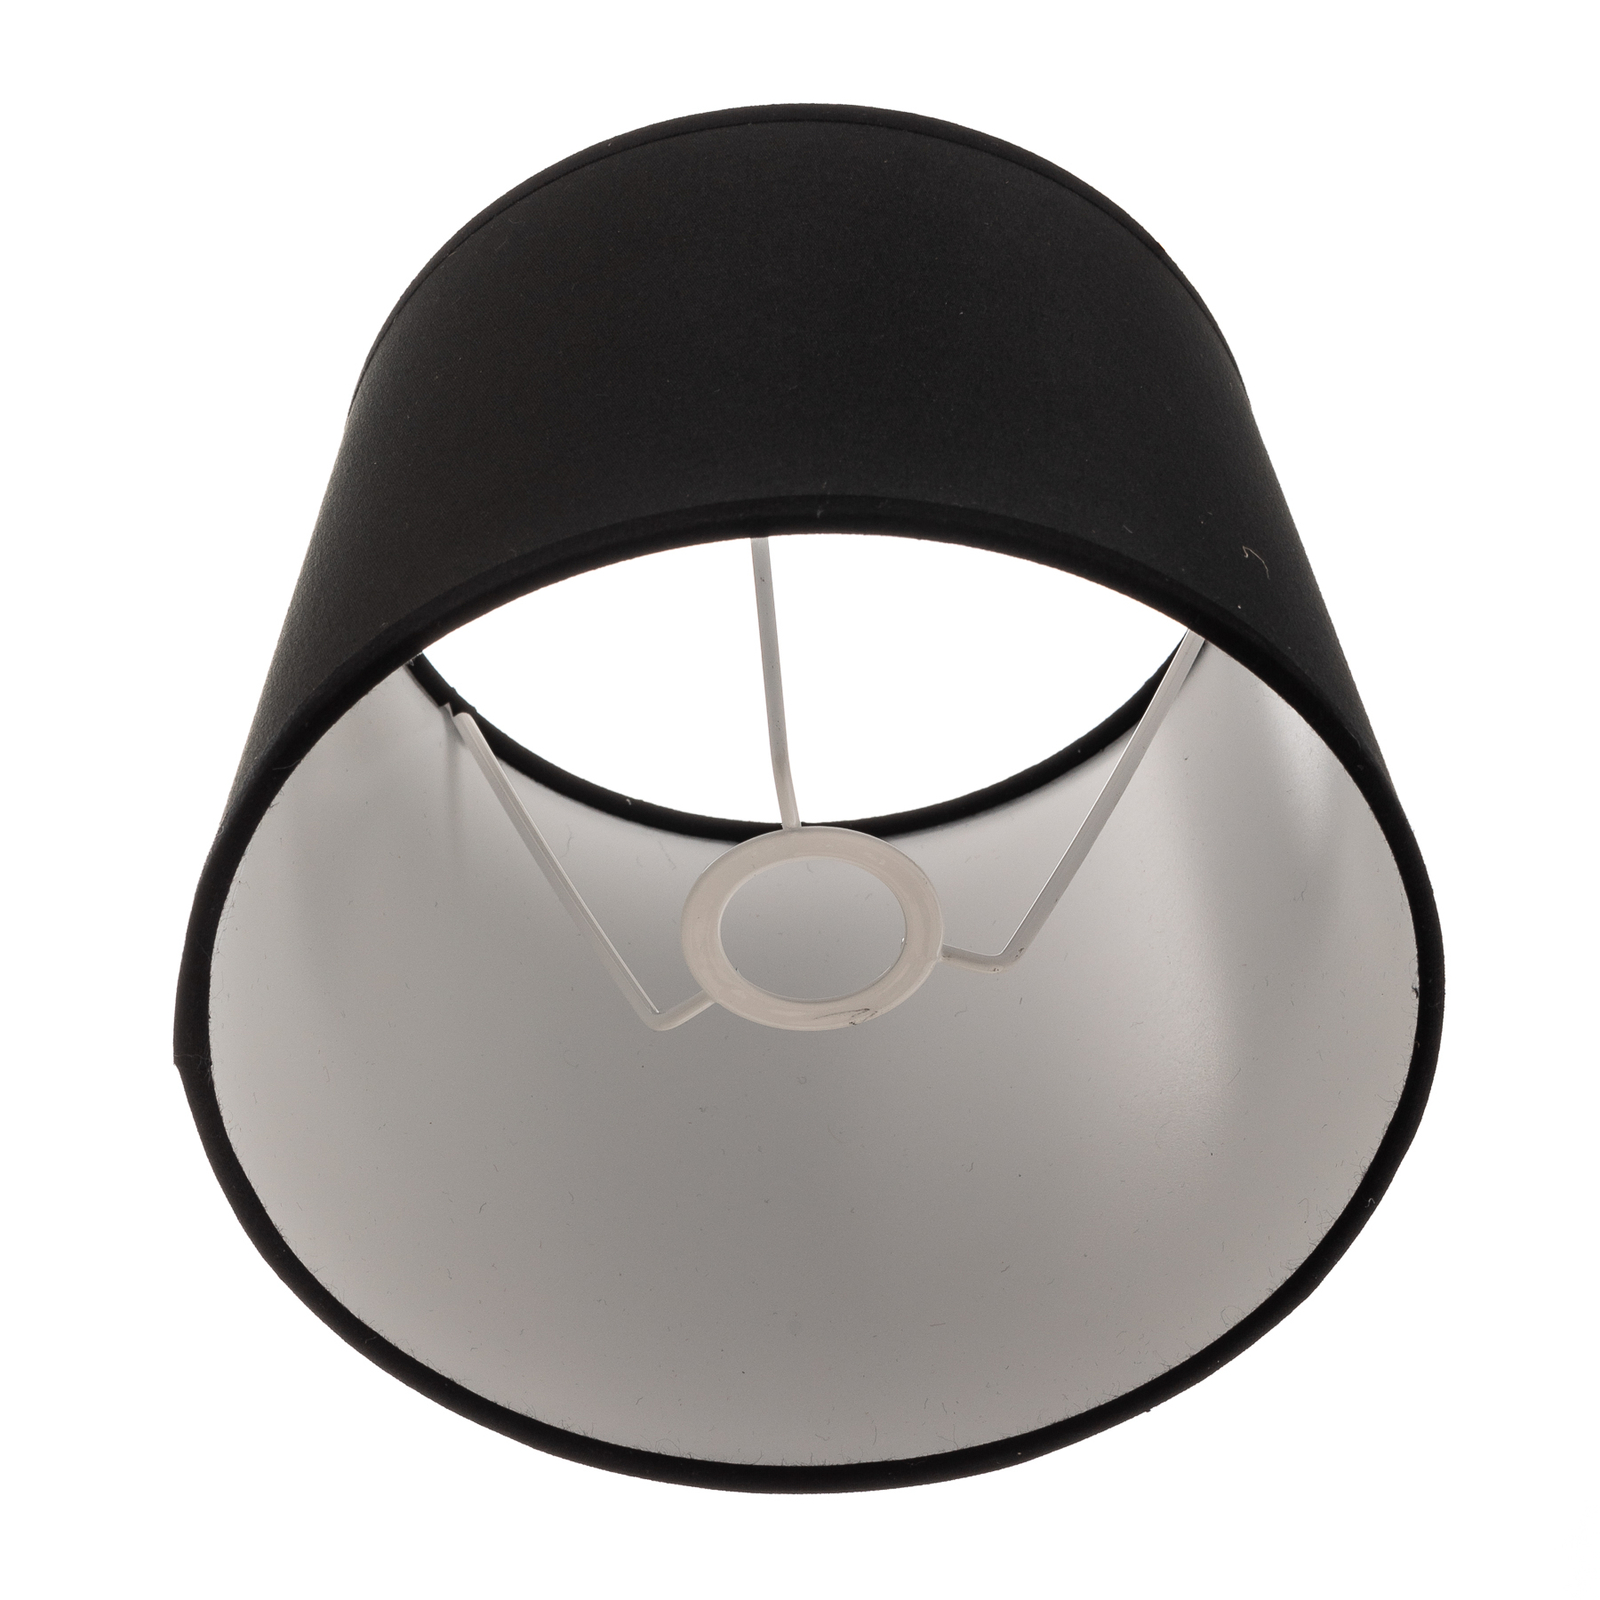 Classic S lampshade, black